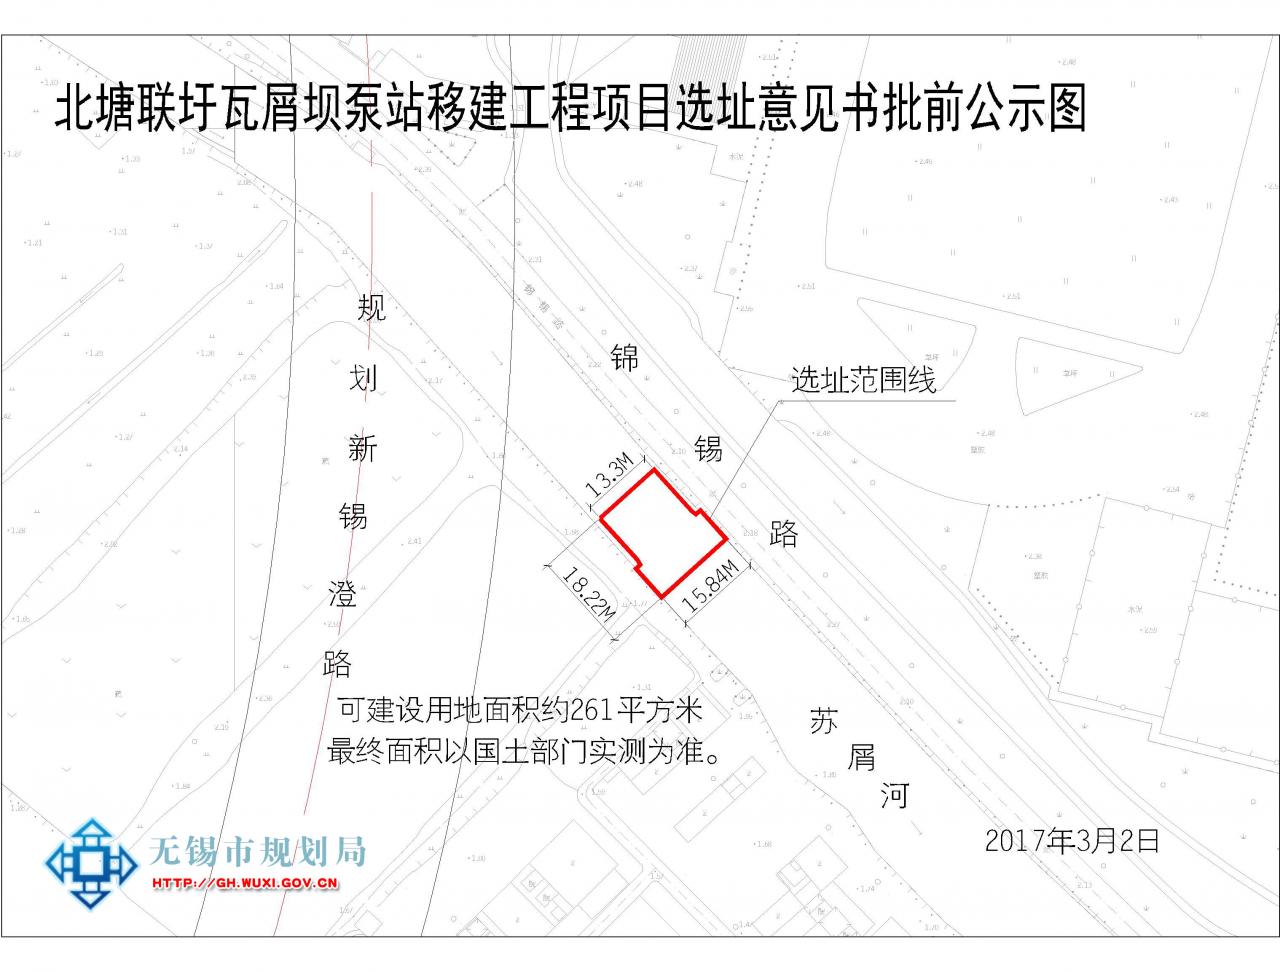 北塘联圩瓦屑坝泵站移建工程项目选址意见书批前公示